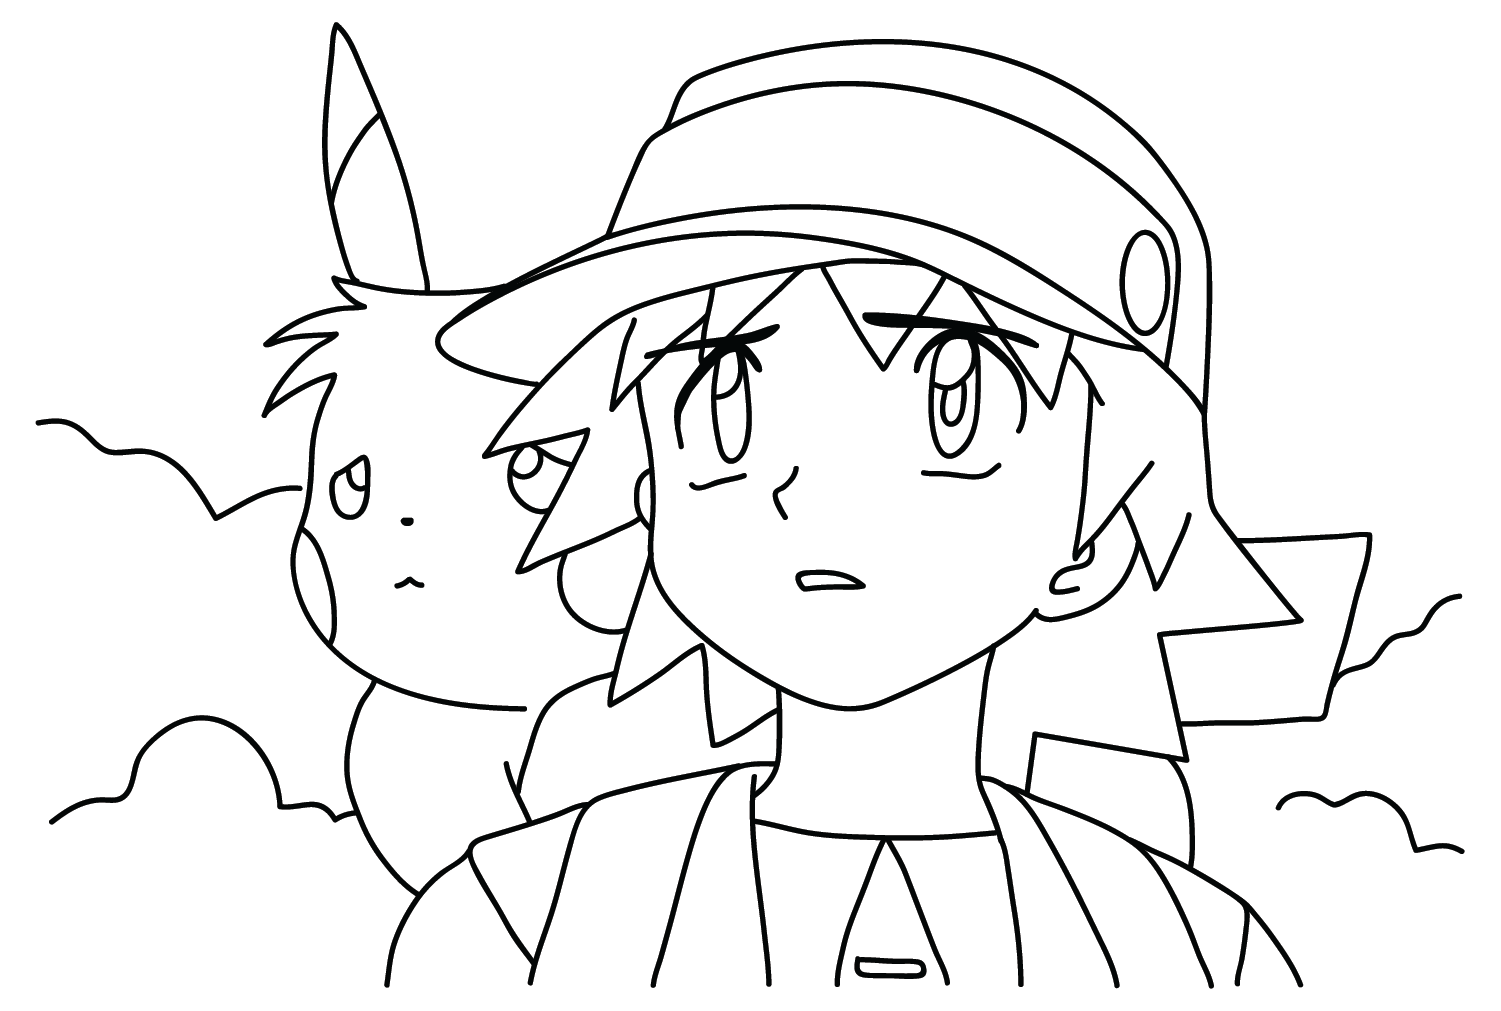 5 desenhos do Ash e Pikachu para baixar, imprimir, colorir e